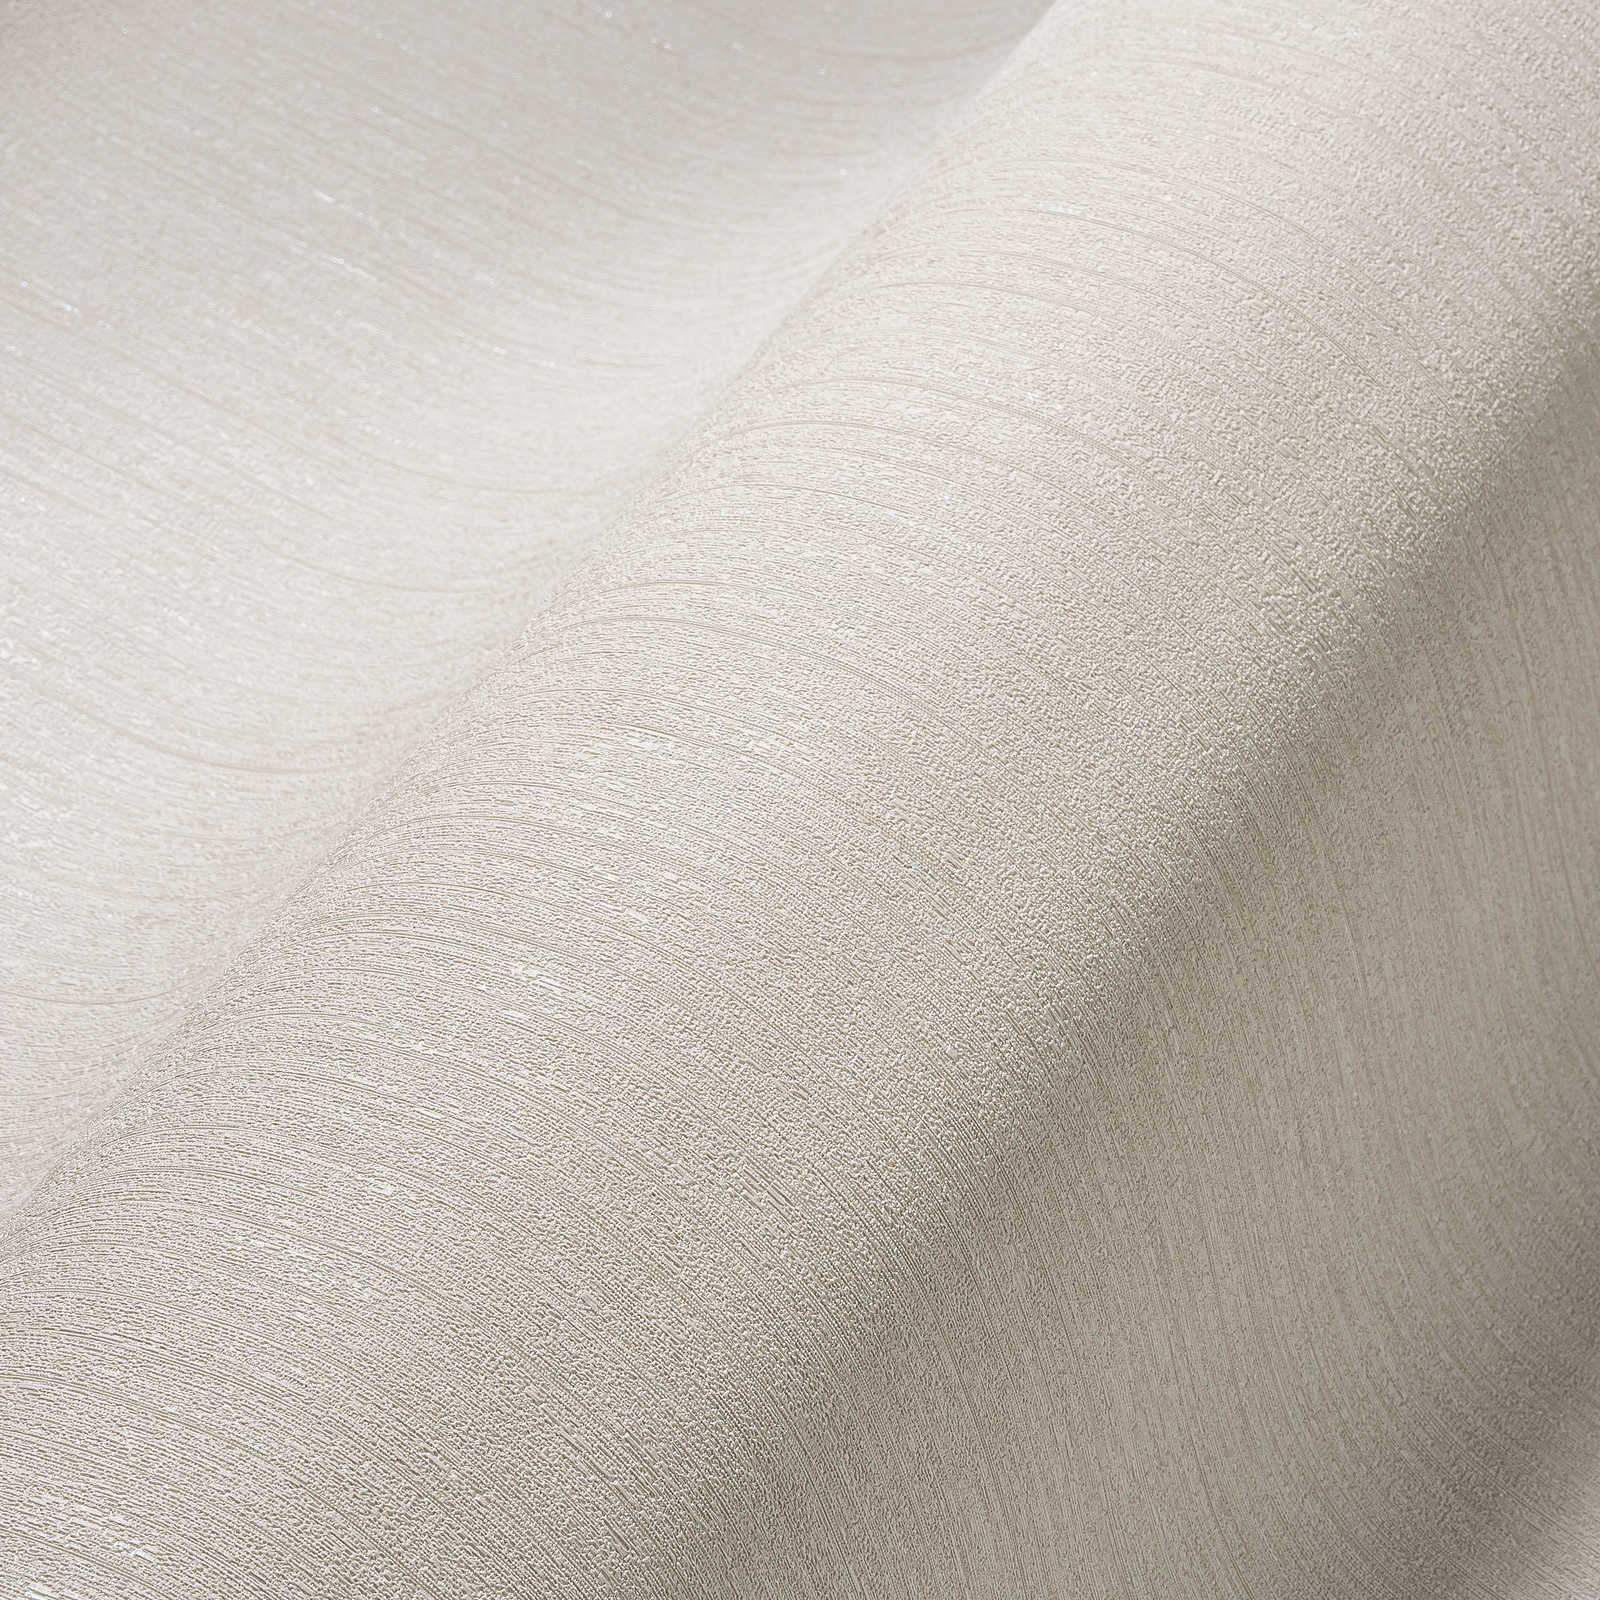             Papel pintado no tejido taupe, liso y seda mate con efecto de textura
        